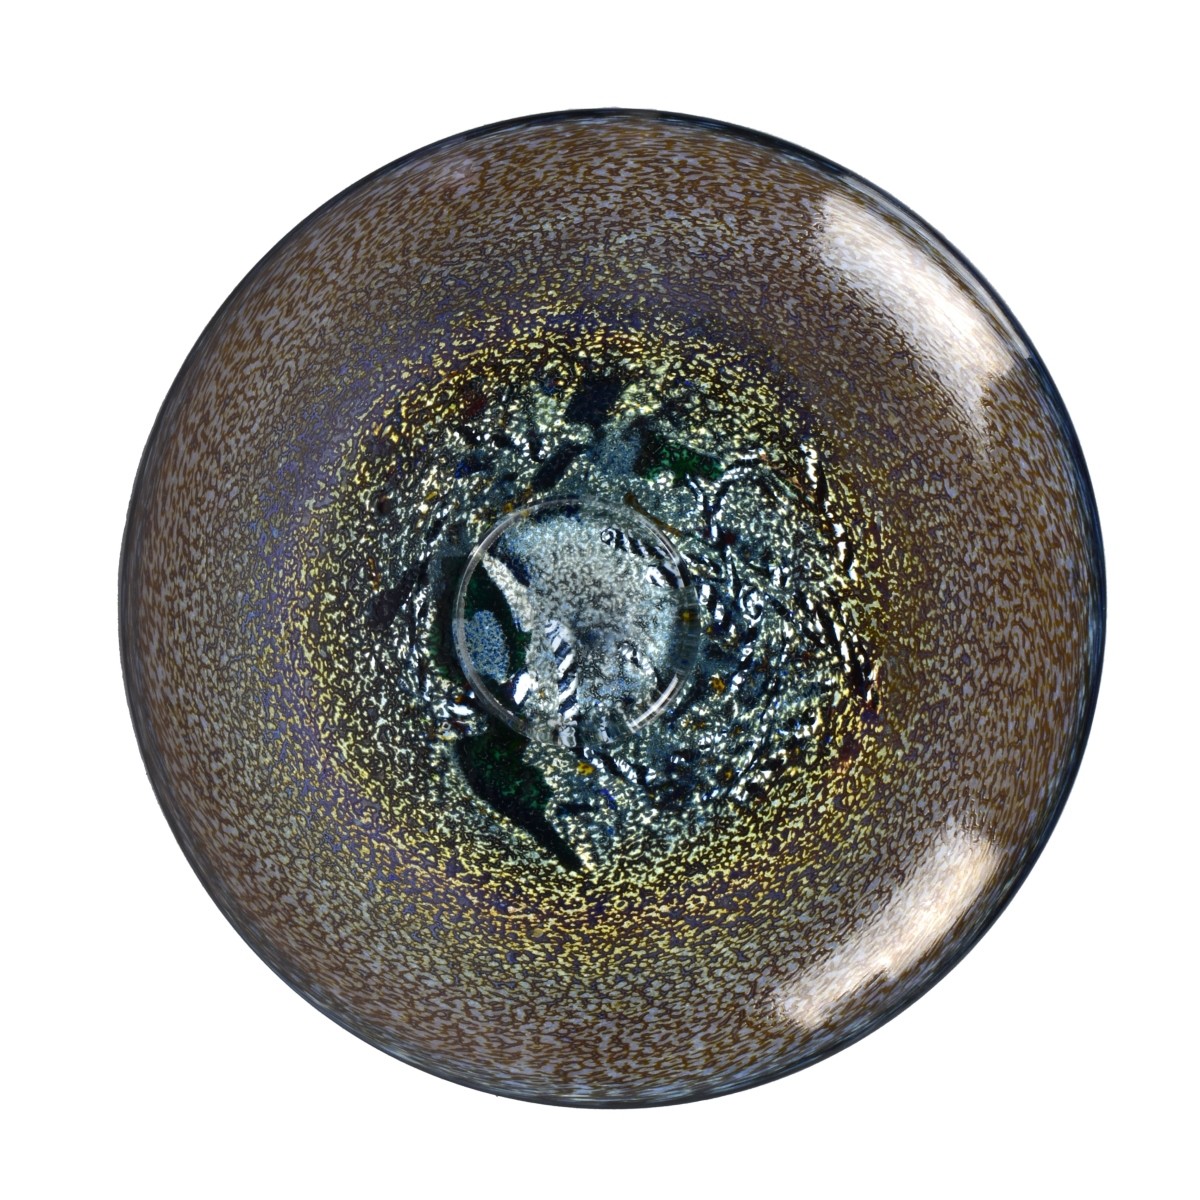 Kosta Boda Art Glass Footed Dish